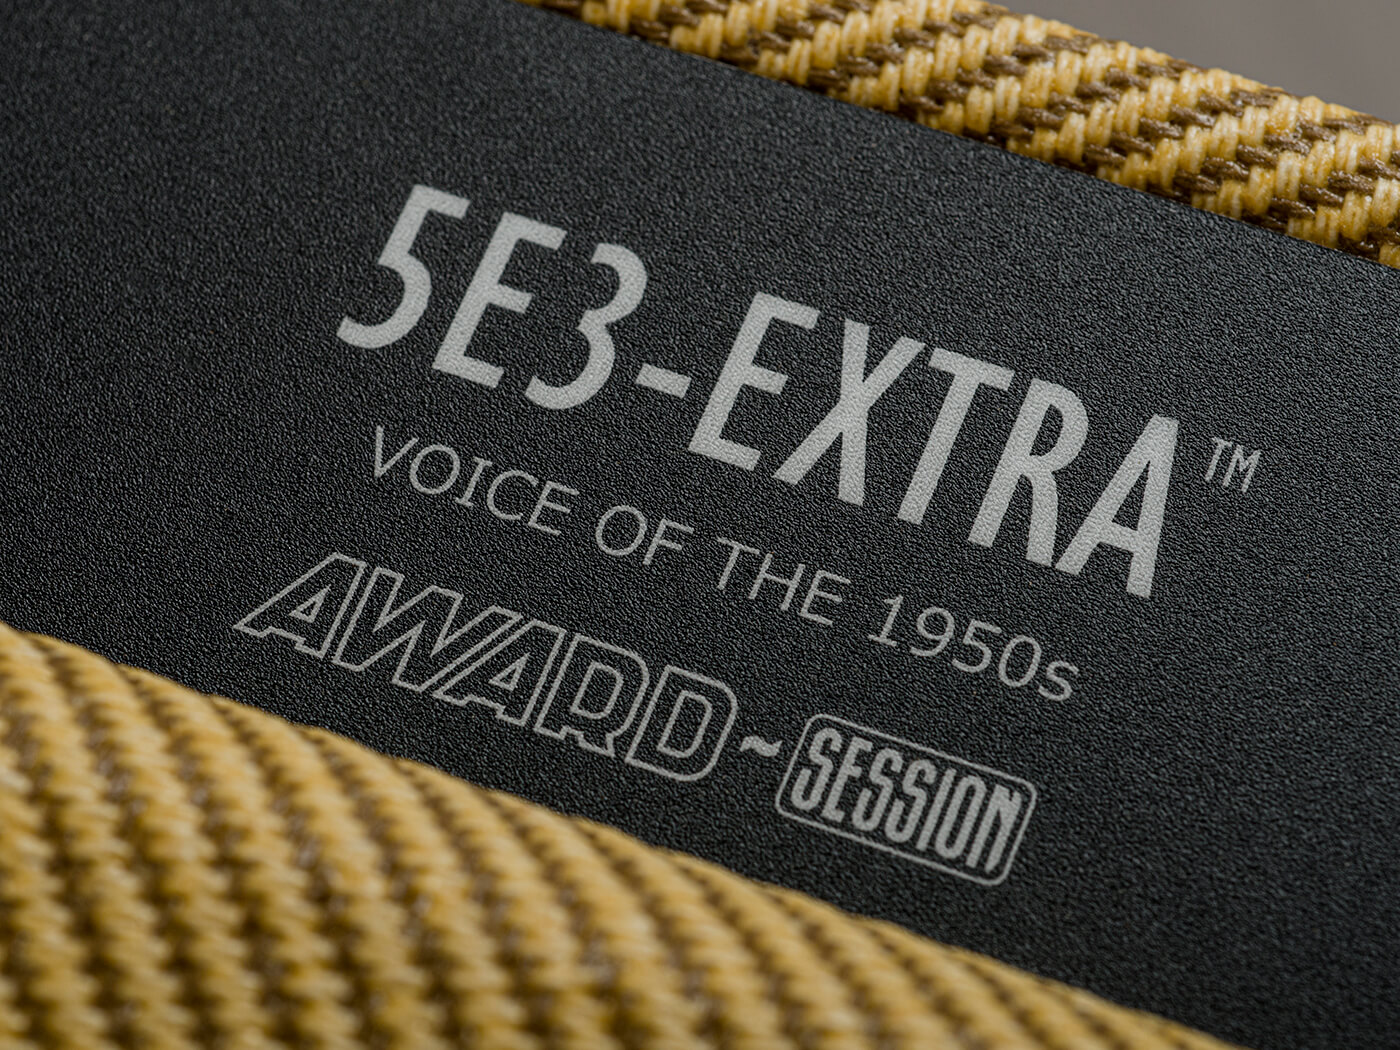 Award-Session 5E3 Extra 22